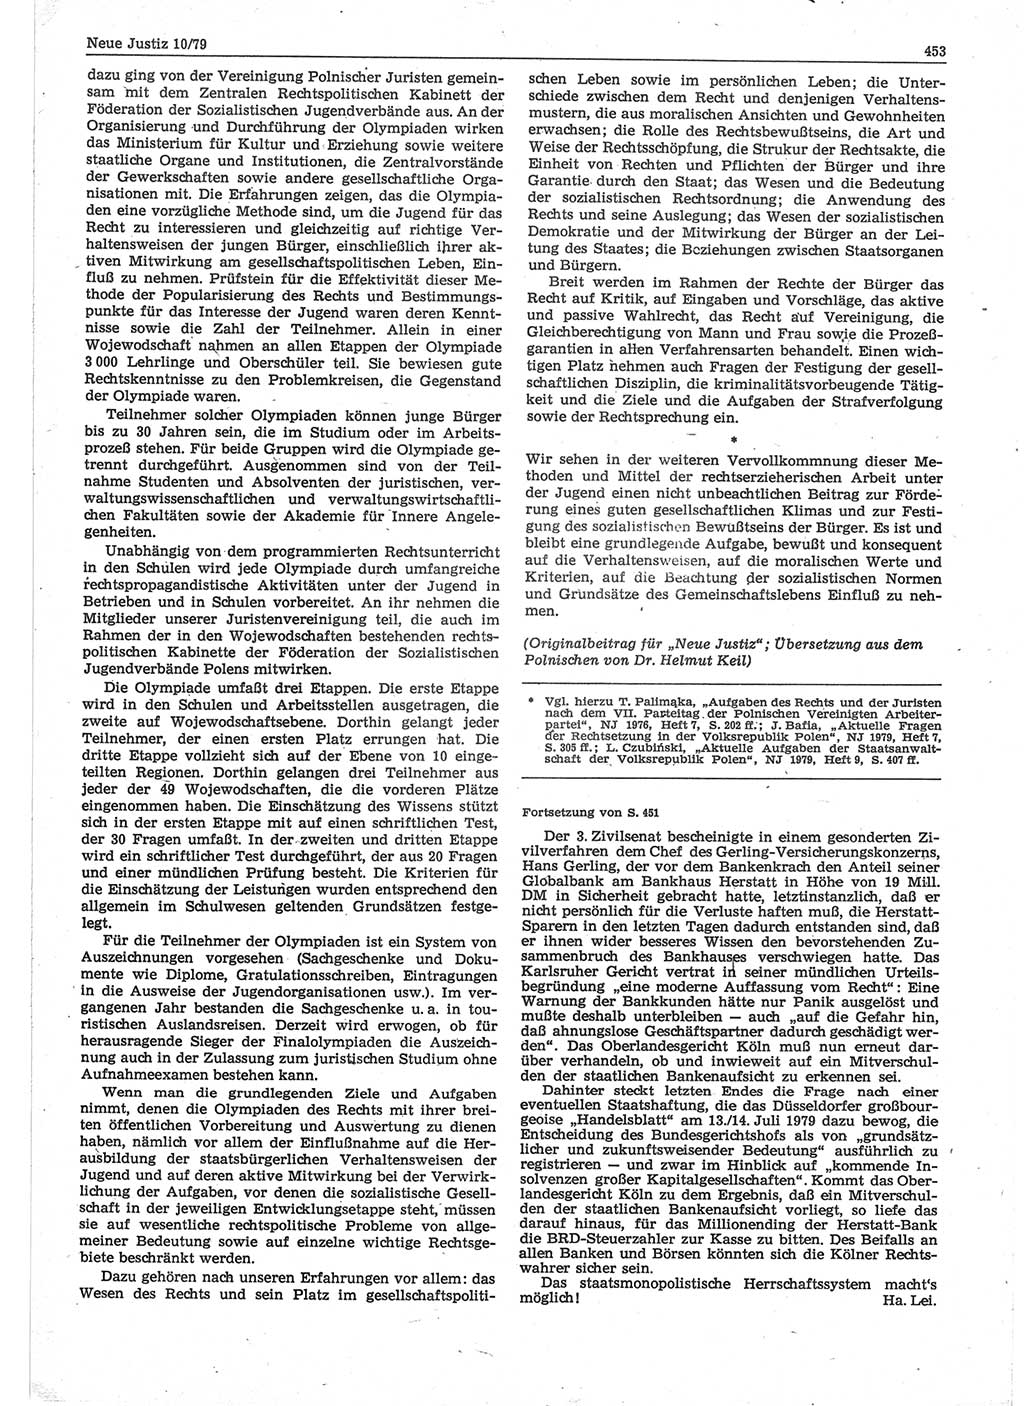 Neue Justiz (NJ), Zeitschrift für sozialistisches Recht und Gesetzlichkeit [Deutsche Demokratische Republik (DDR)], 33. Jahrgang 1979, Seite 453 (NJ DDR 1979, S. 453)